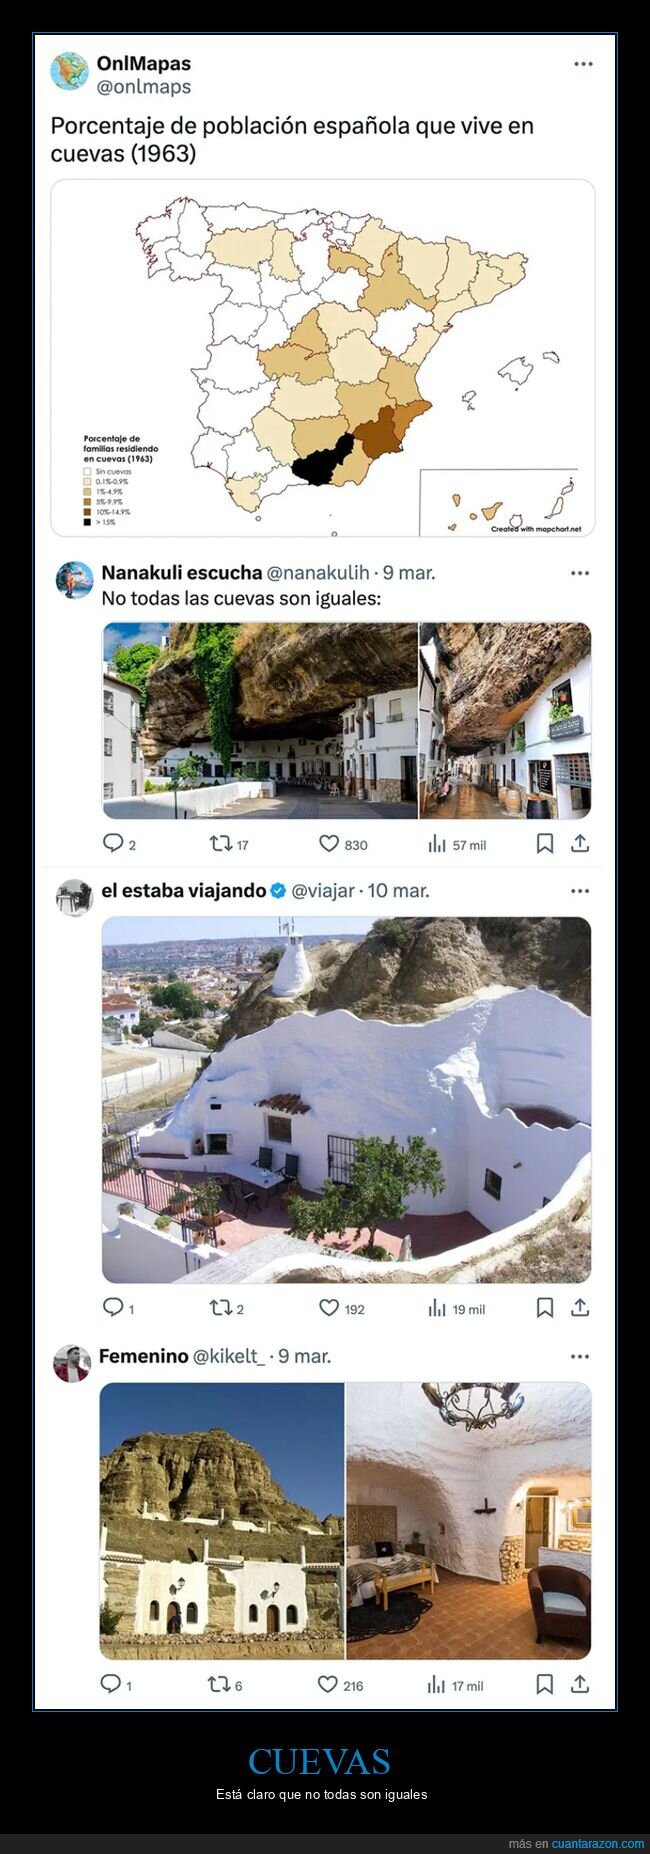 casas,cuevas,españa,mapa